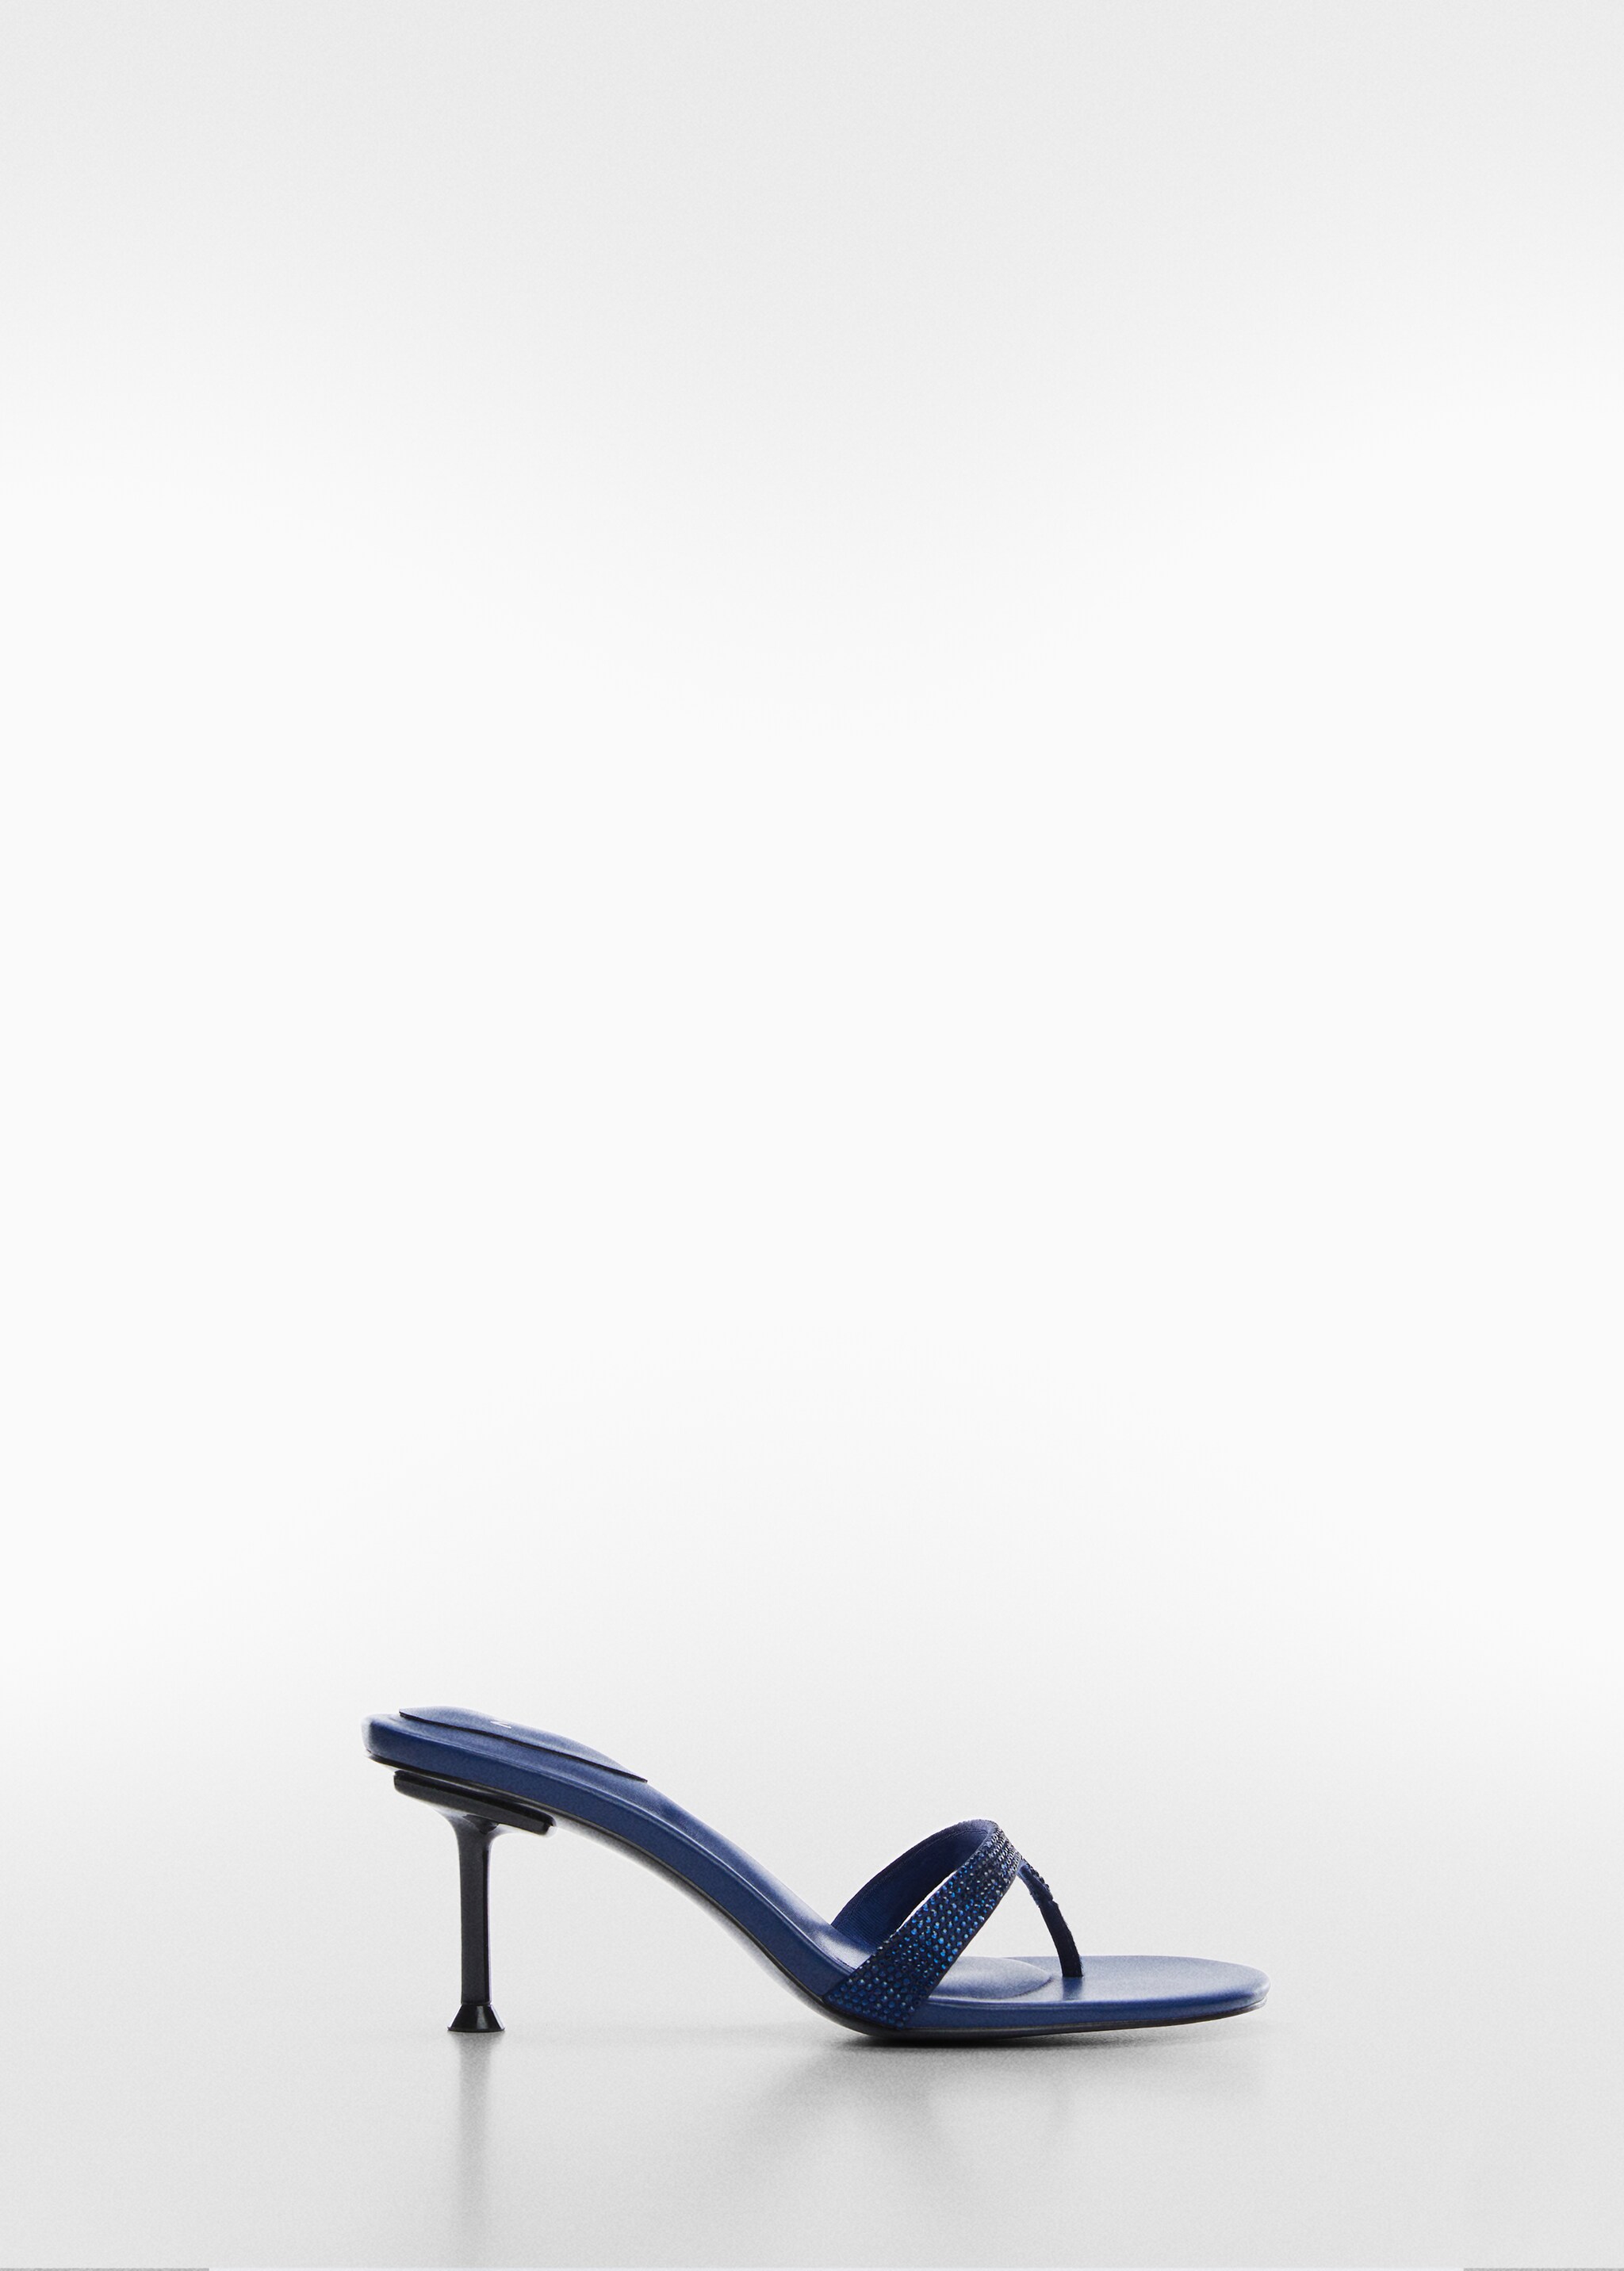 Heeled sandal with strass strap - Articol fără model